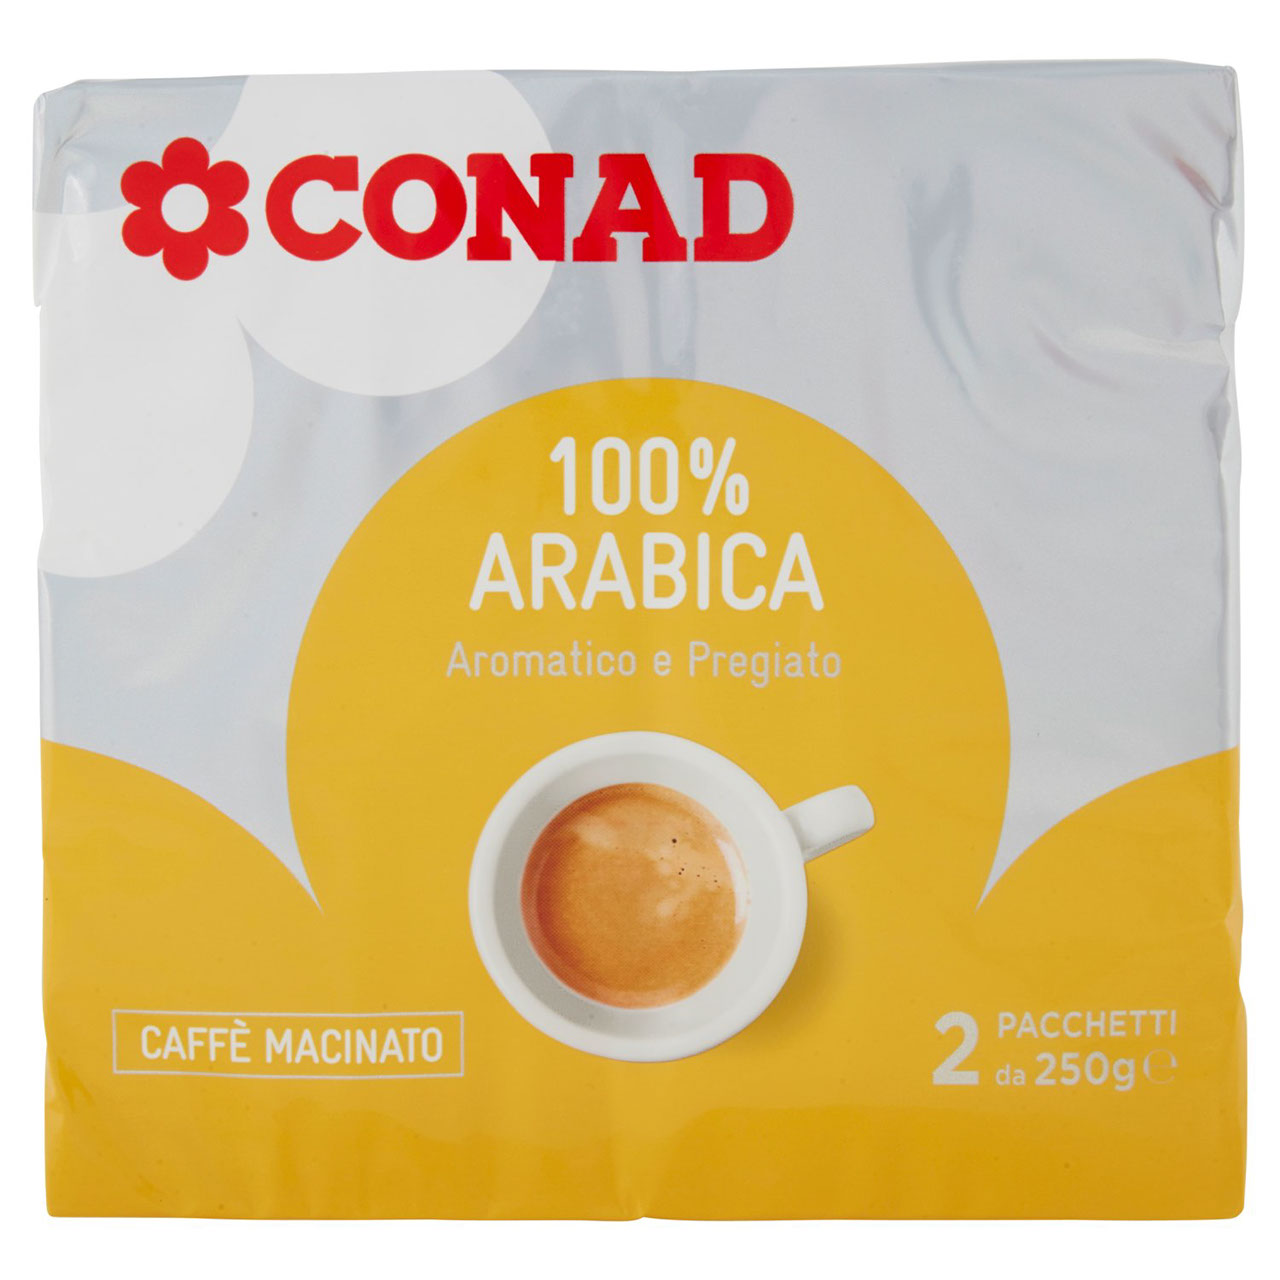 Caffè Arabica Aromatico Pregiato Macinato Conad